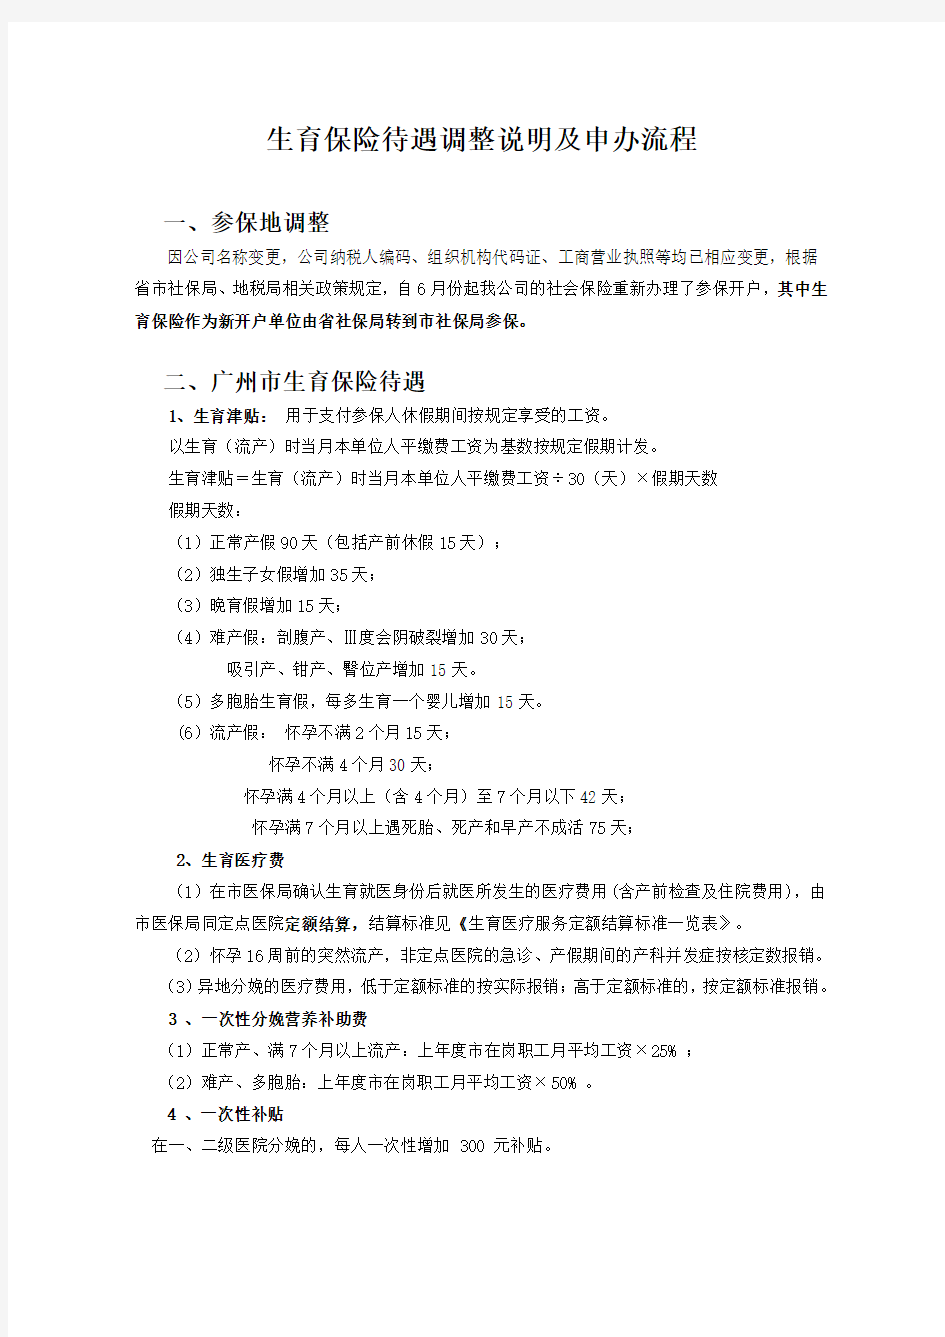 生育保险调整说明及申办流程(广州市参保人员)